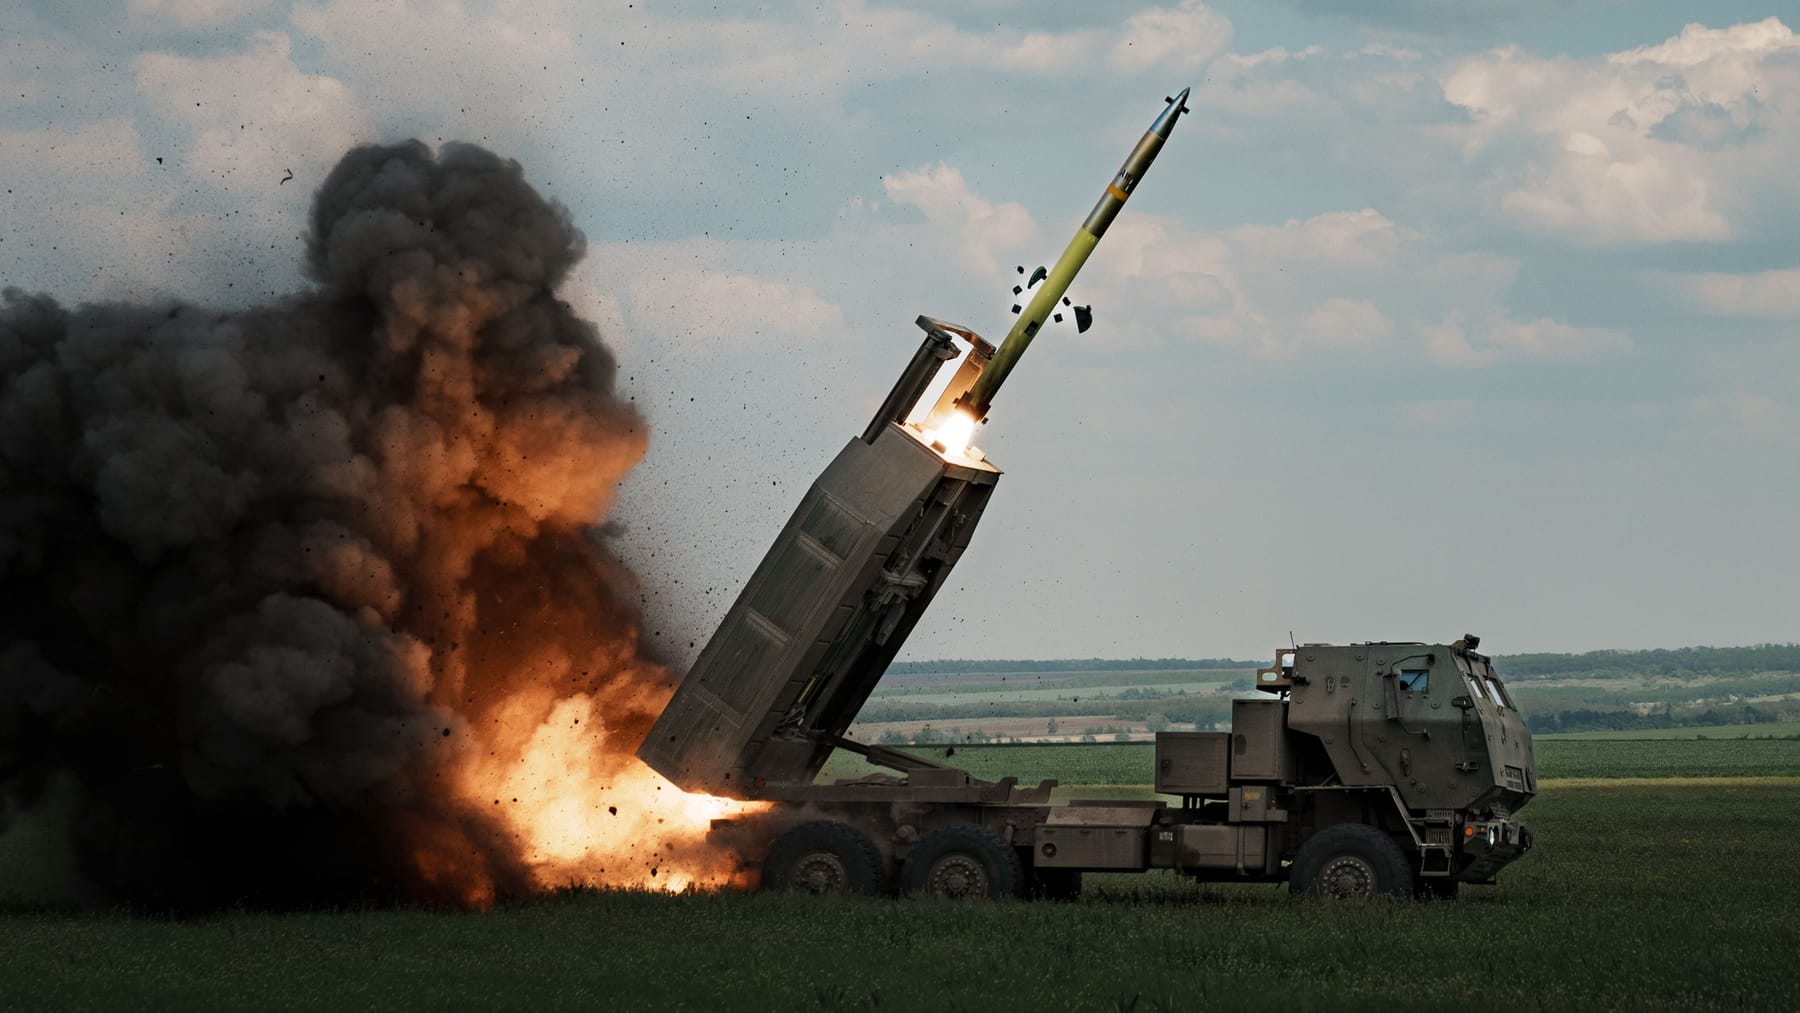 “Wenn diese Offensive scheitert, plant Kiew die nächste“ – Experte erwartet langen Ukraine-Krieg